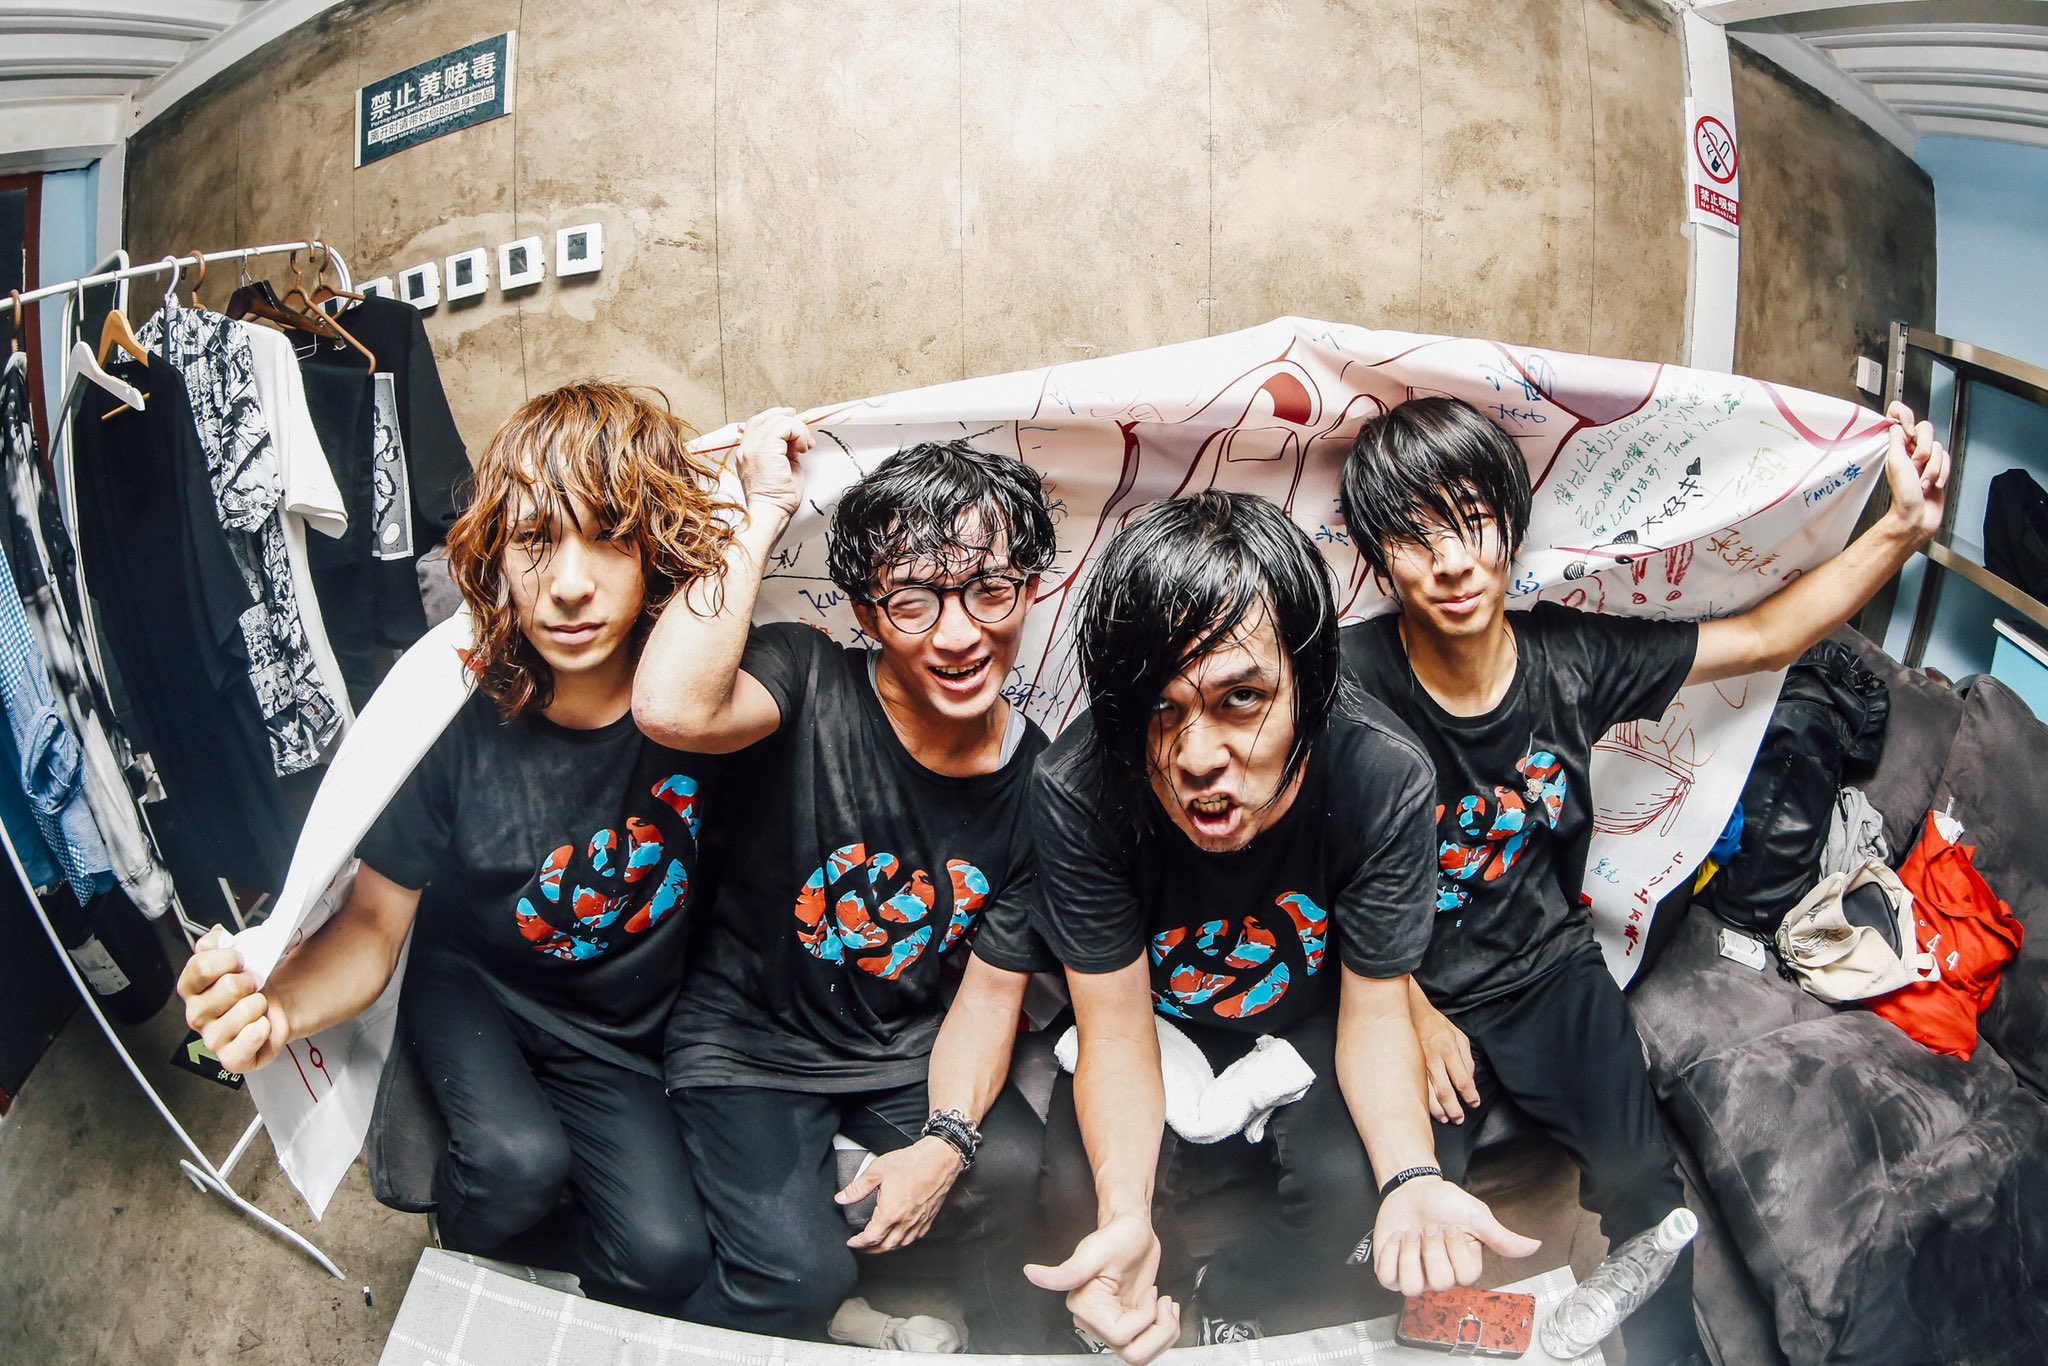 wowakaさんを中心に2011年に結成されたロックバンド